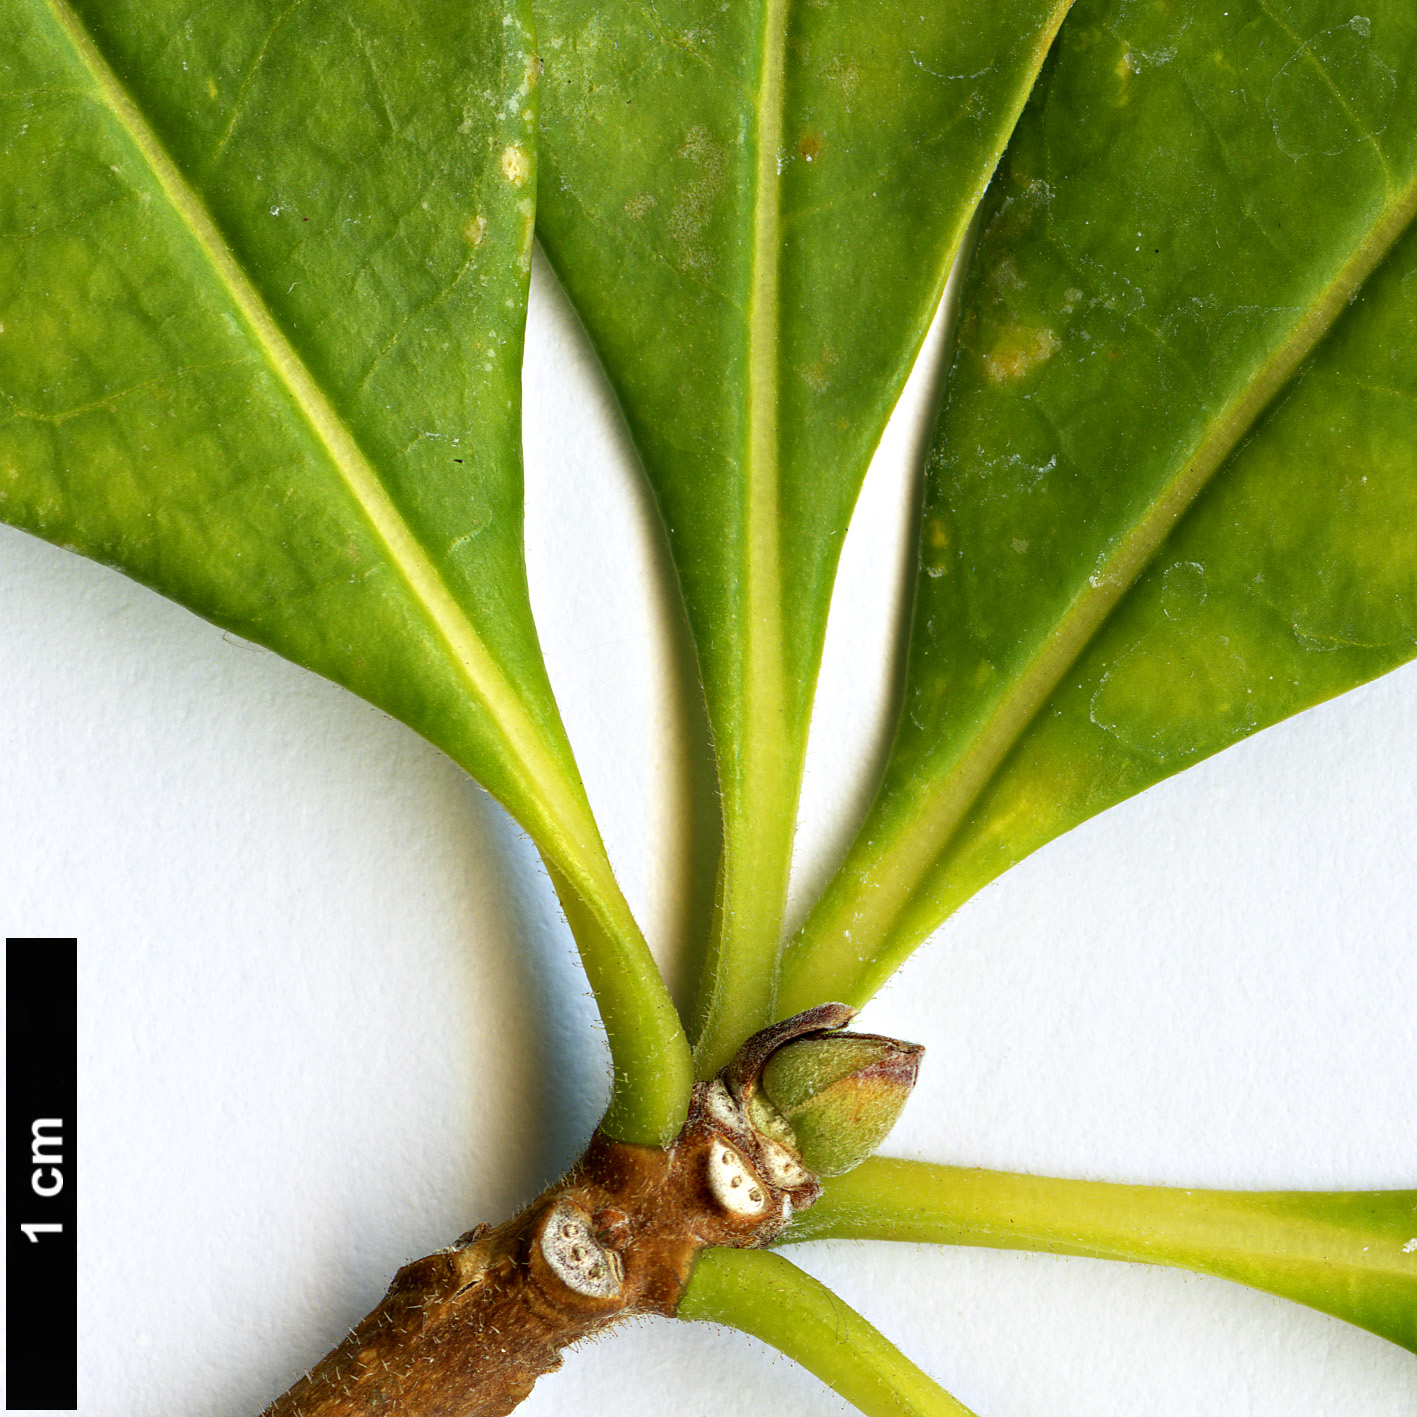 High resolution image: Family: Pittosporaceae - Genus: Hymenosporum - Taxon: flavum